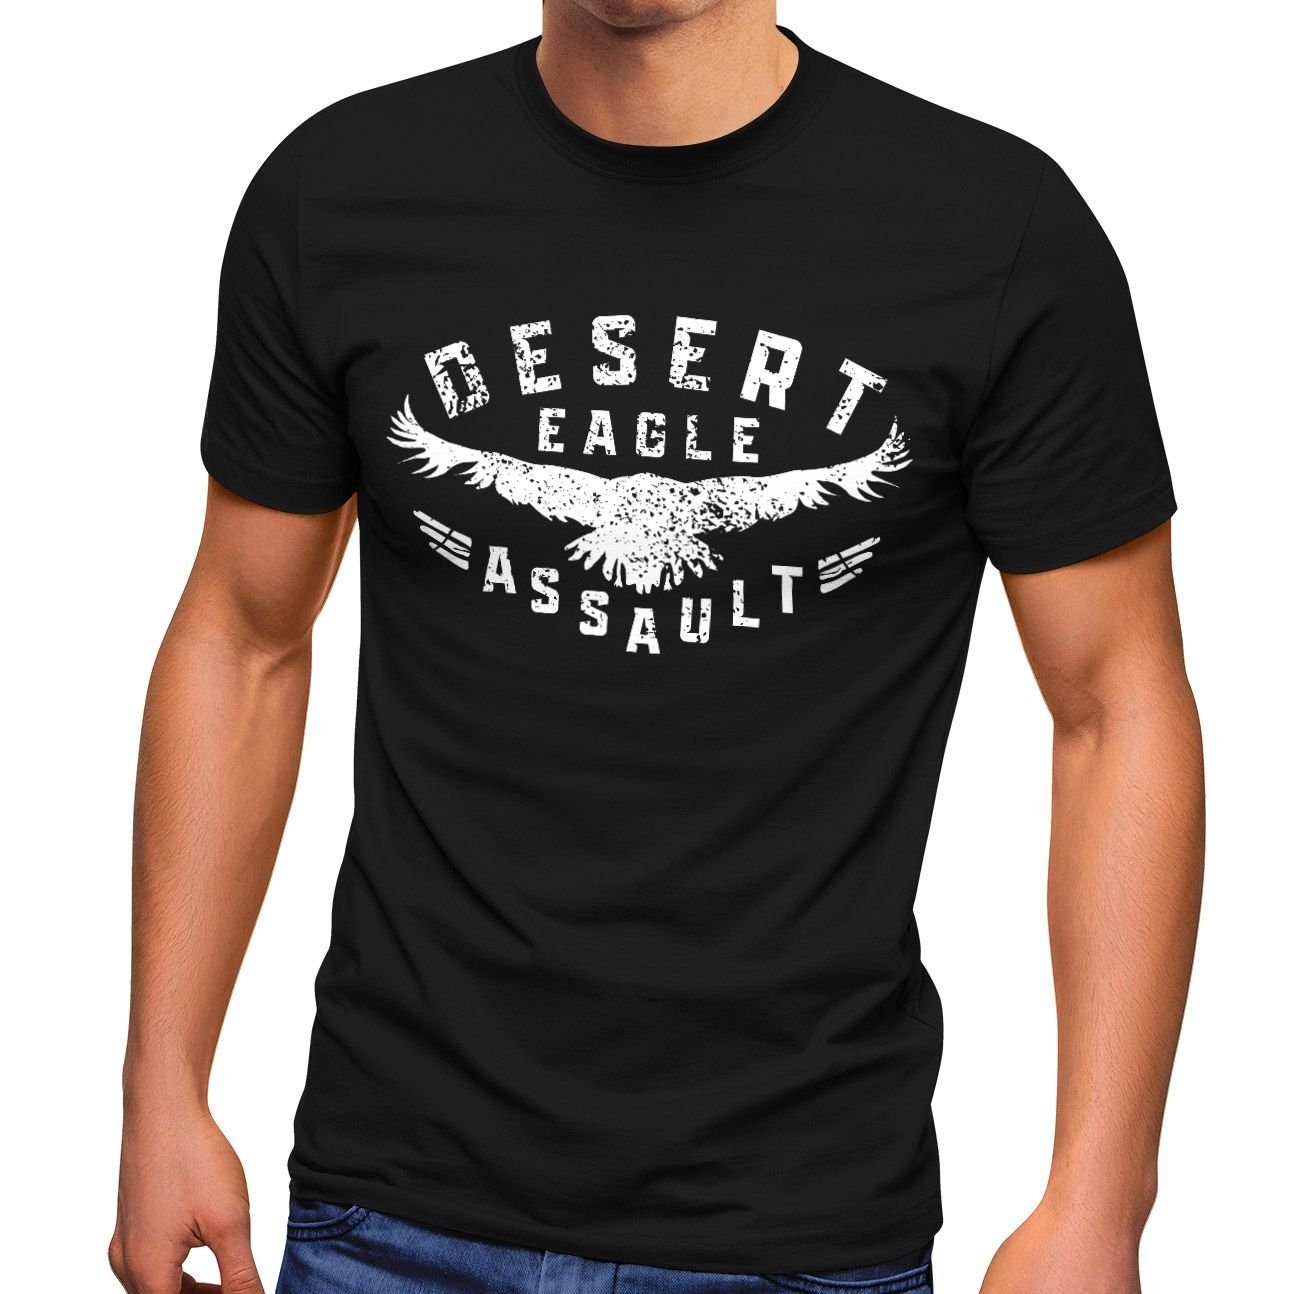 Desert Neverless® Print Assault Herren Eagle Print-Shirt T-Shirt schwarz Printshirt Streetstyle Aufschrift Fashion Adler mit Neverless